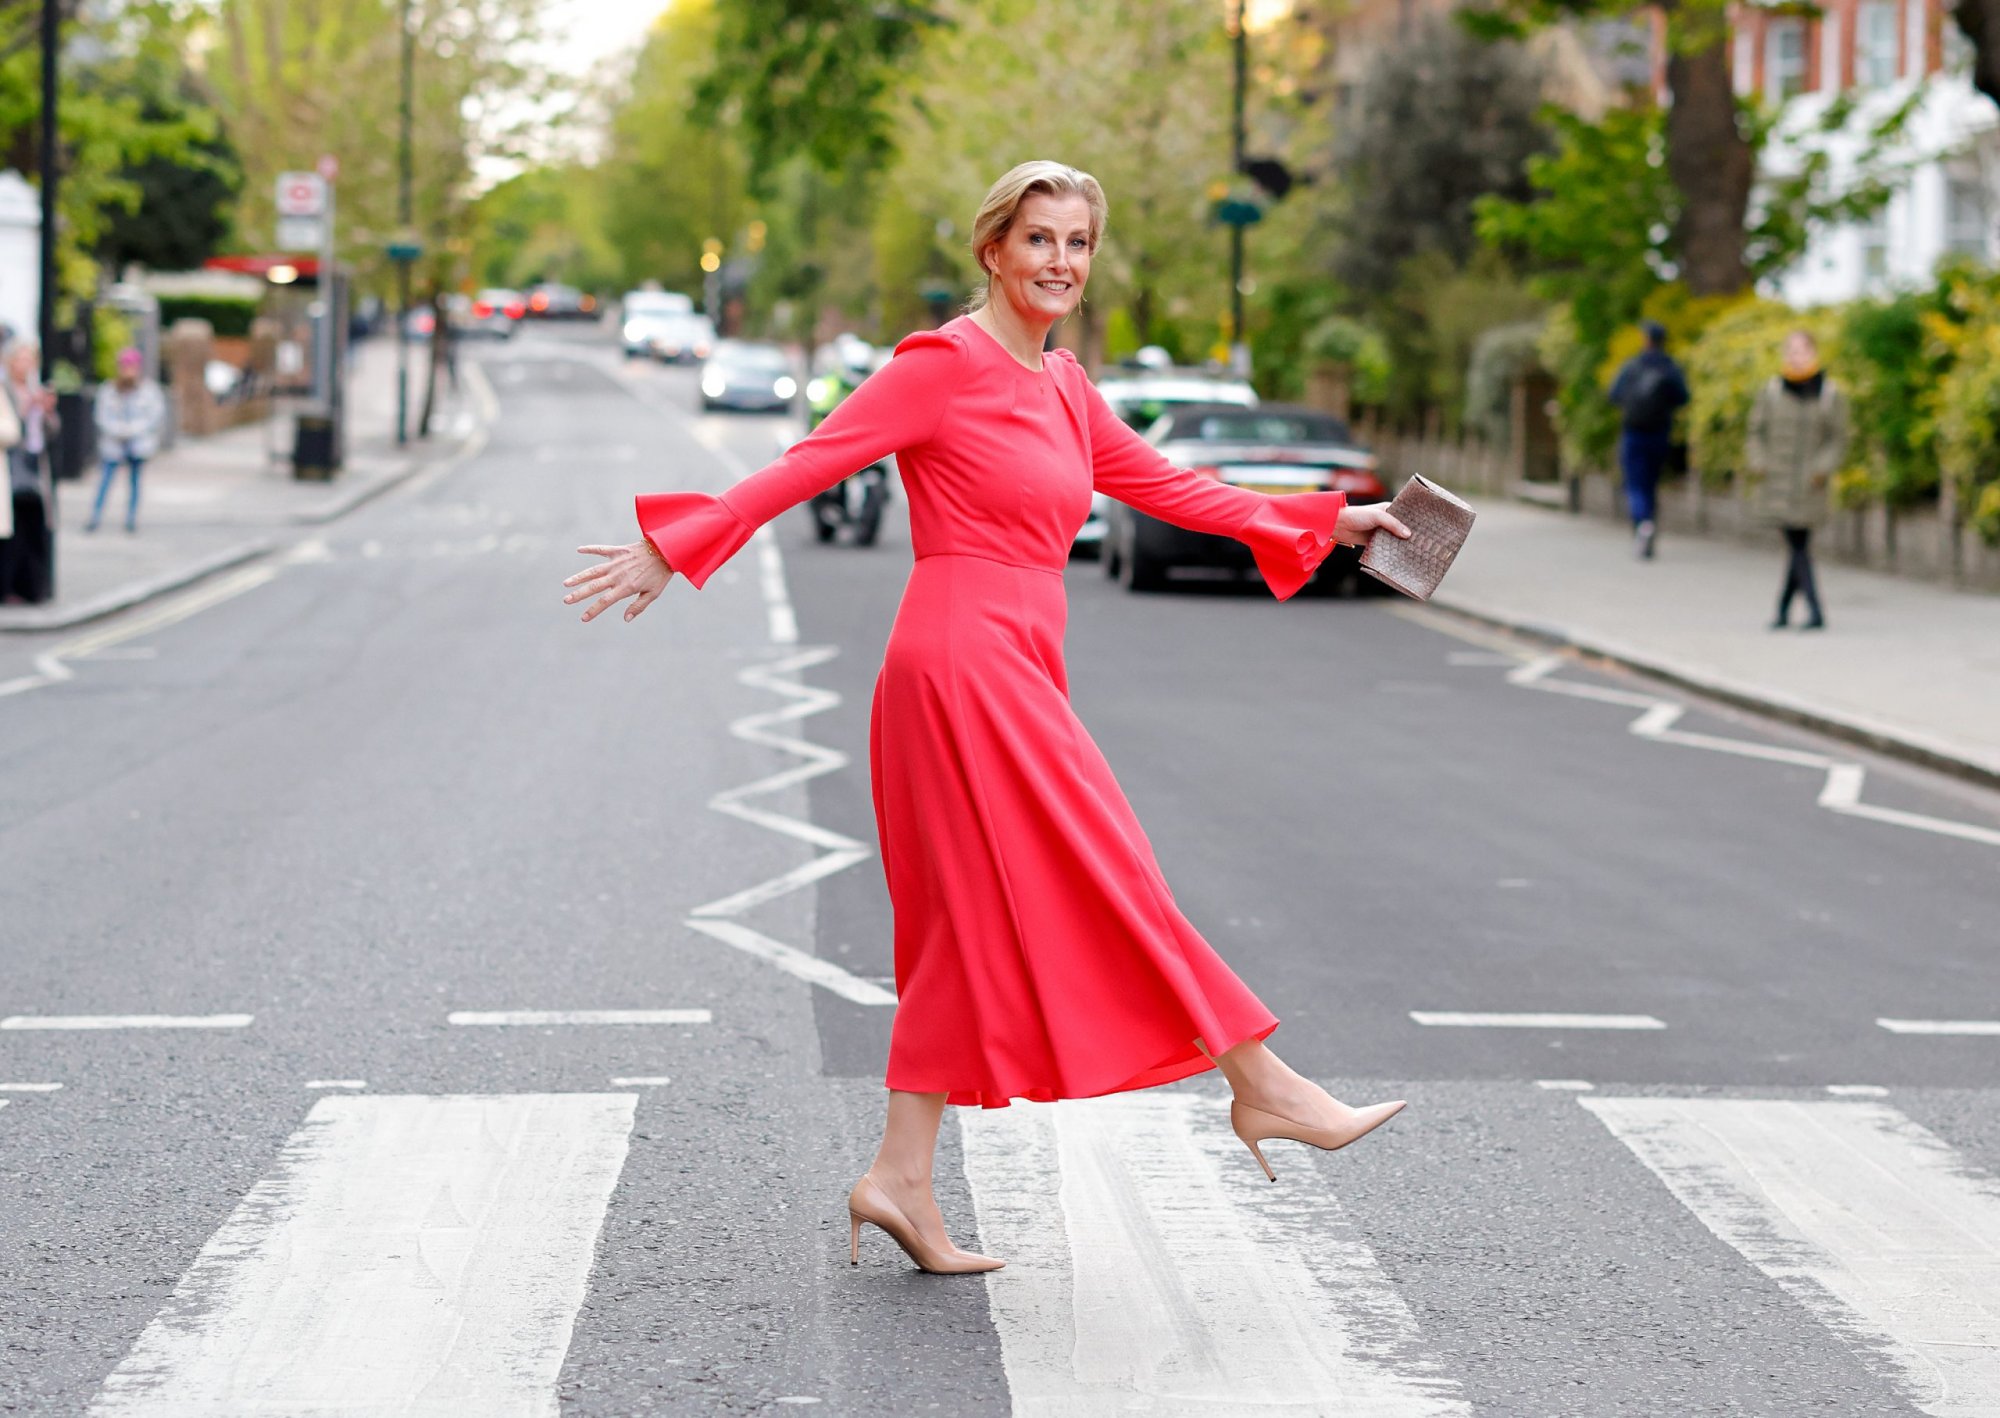 Σοφία του Εδιμβούργου: Η αγαπημένη νύφη της Ελισάβετ αναπαράγει το Abbey Road εξώφυλλο των Beatles και είναι iconic